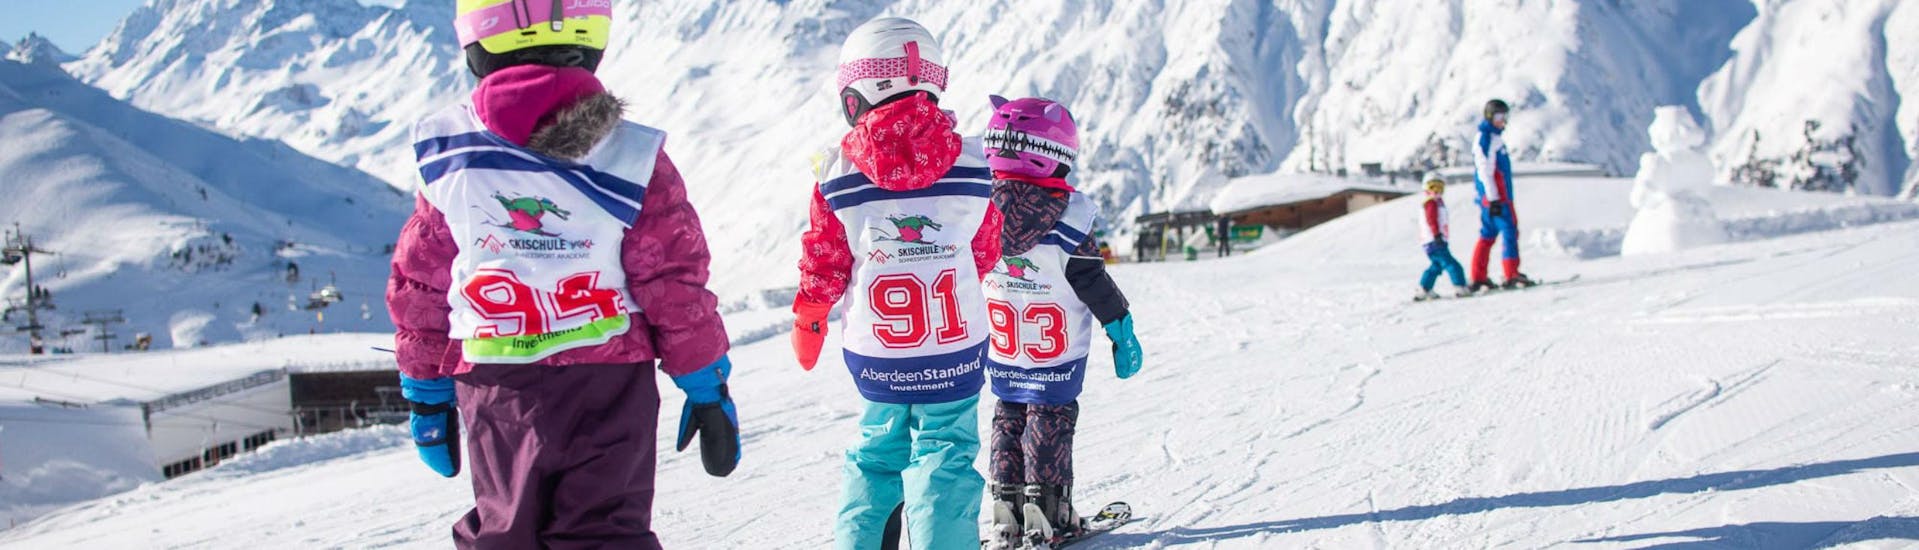 Tres niños pequeños esquían en fila uno detrás del otro a lo largo de un plano de nieve durante sus clases de esquí para niños (6-15 años) - Para principiantes, en la estación de esquí de Ischgl.